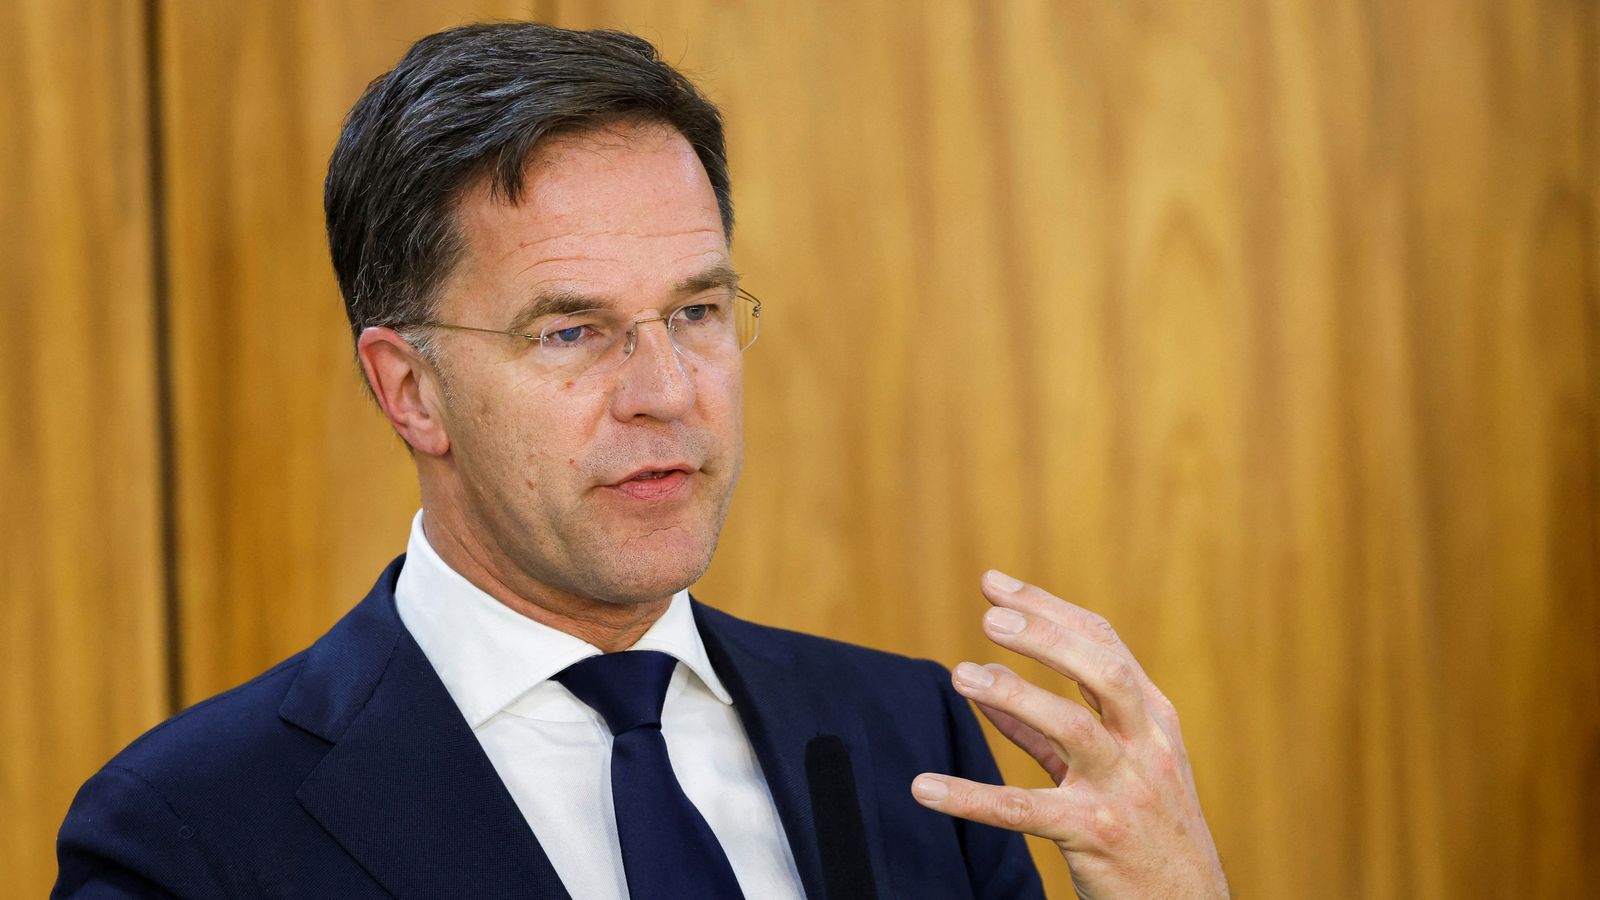 Debatet për emigracionin, kryeministri holandez jep dorëheqjen pas rënies së qeverisë së koalicionit